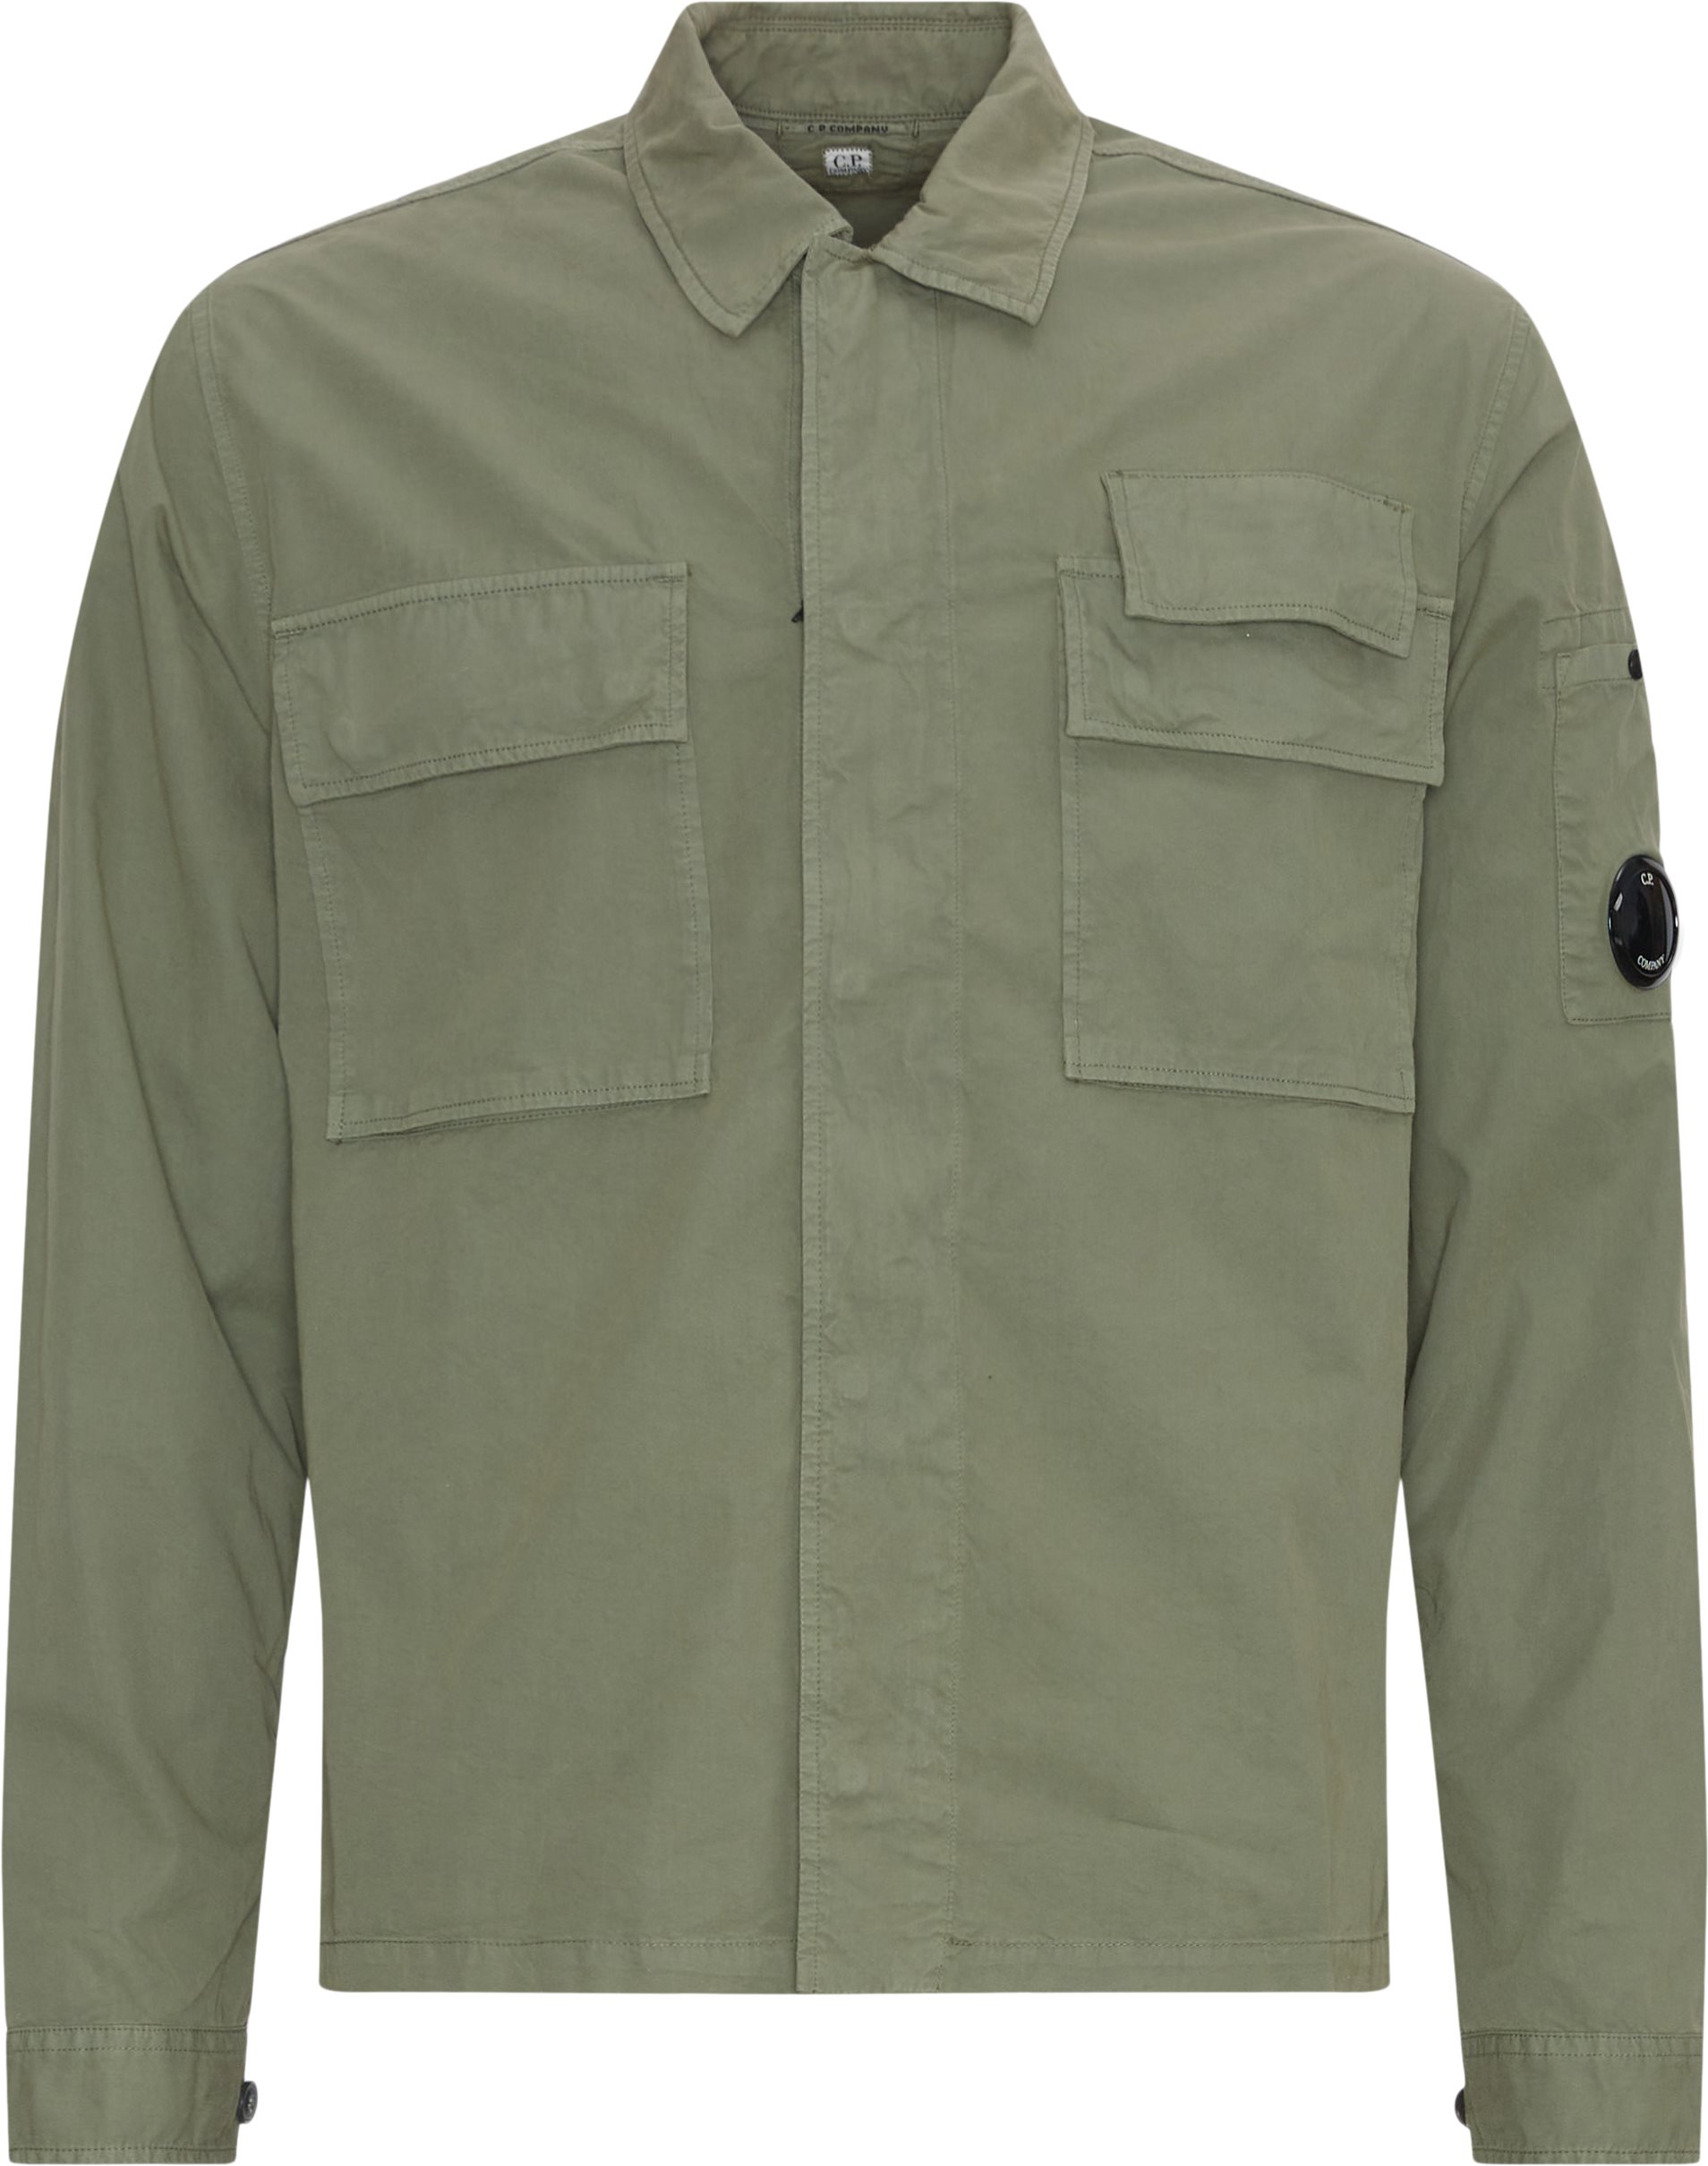 C.P. Company Shirts SH121A 002824G Green